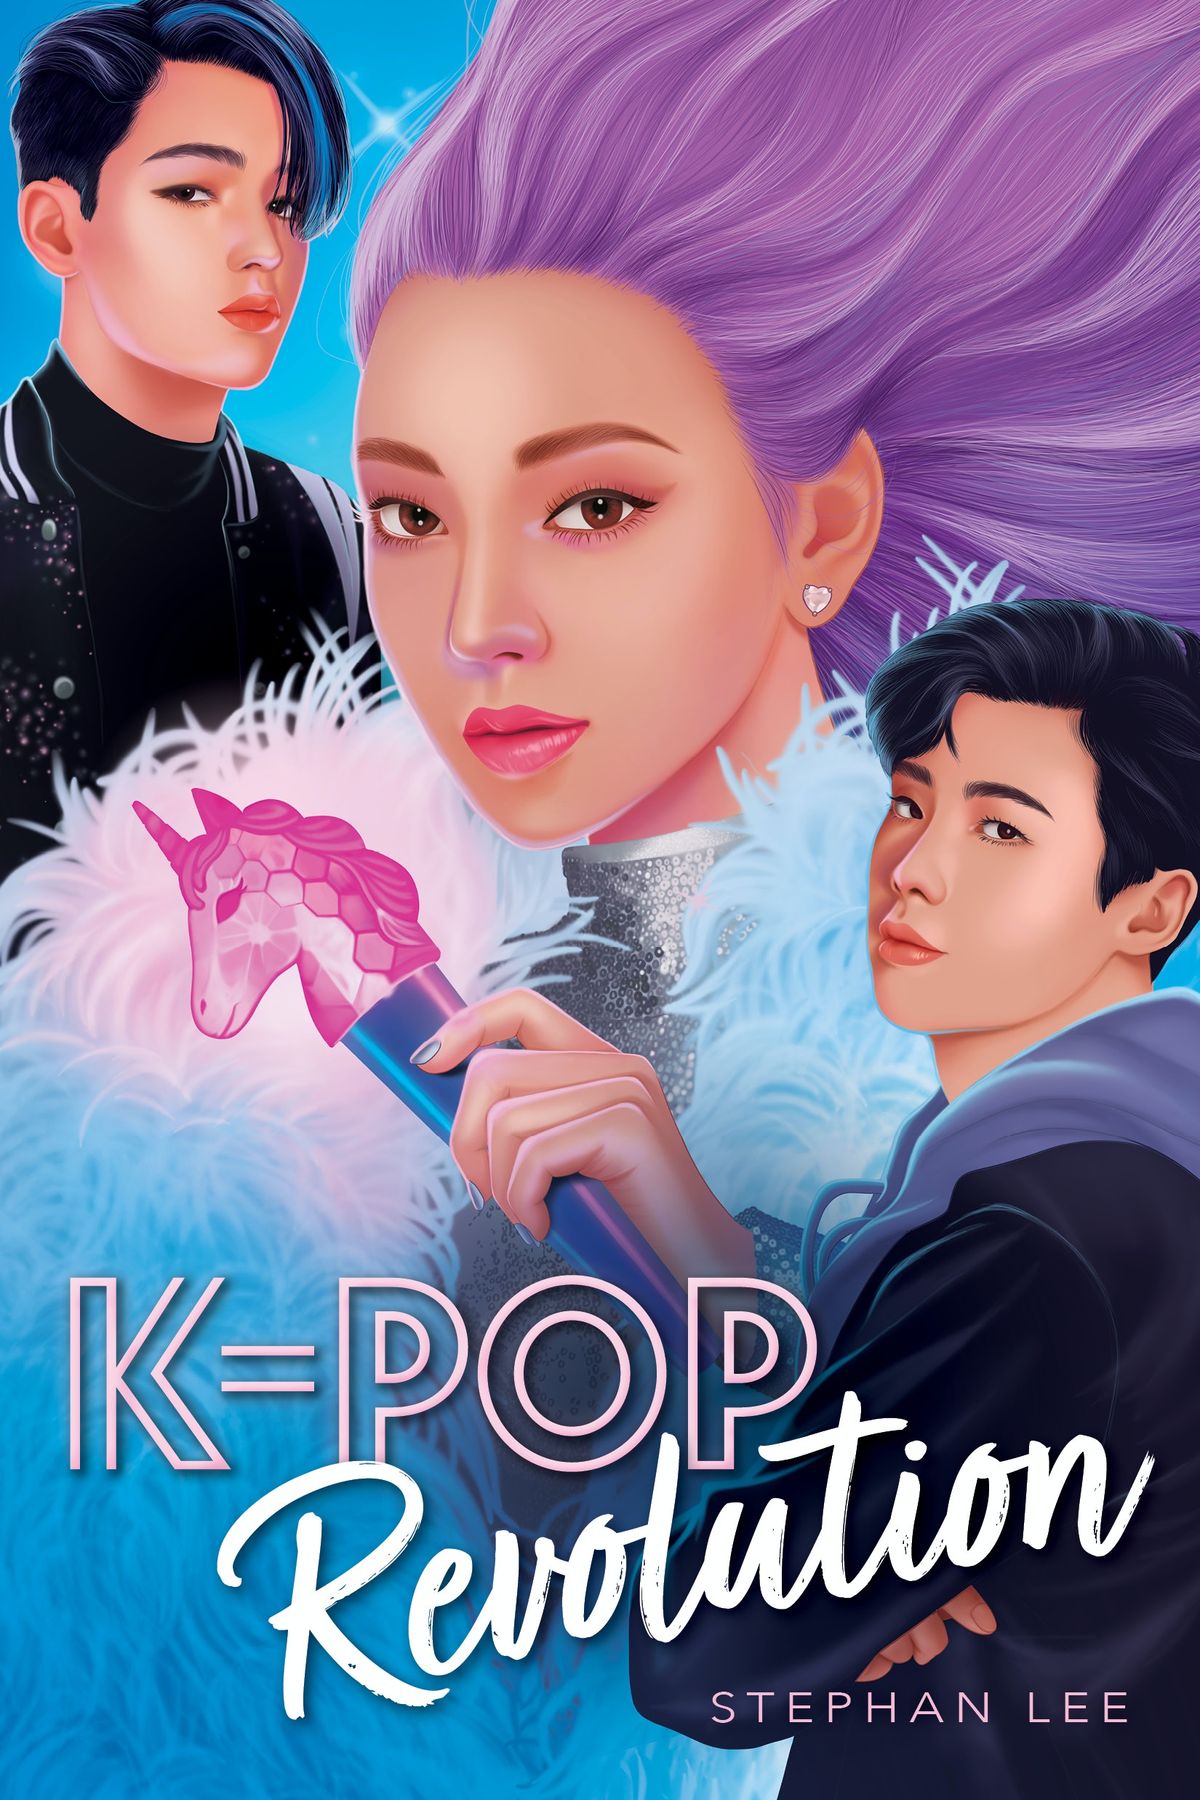 Ρίξτε μια πρώτη ματιά στο εμπιστευτικό σίκουελ της K-Pop του Stephan Lee, K-Pop Revolution